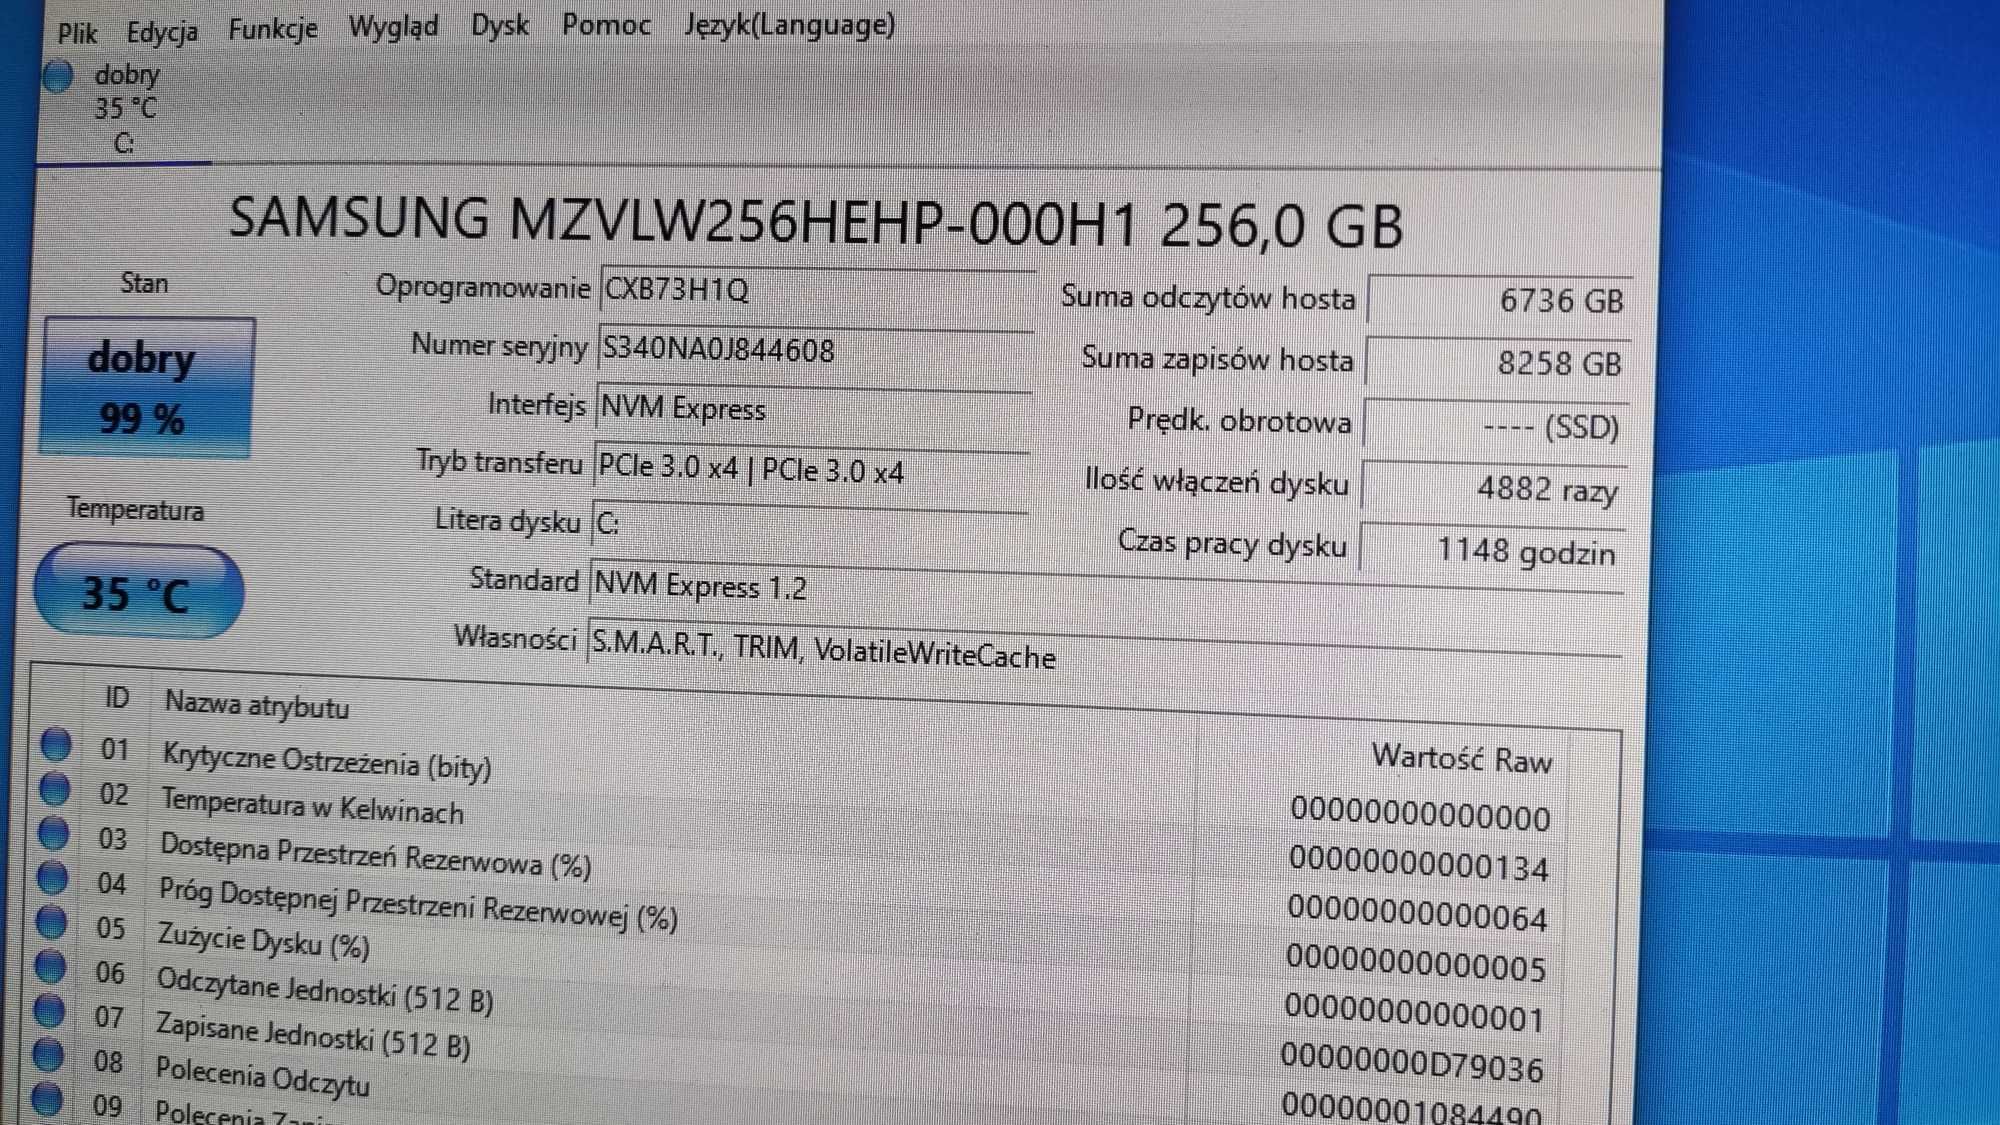 HP 800 G3 Mini I5/16Gb/256Gb SSD M.2 Okazja!!!